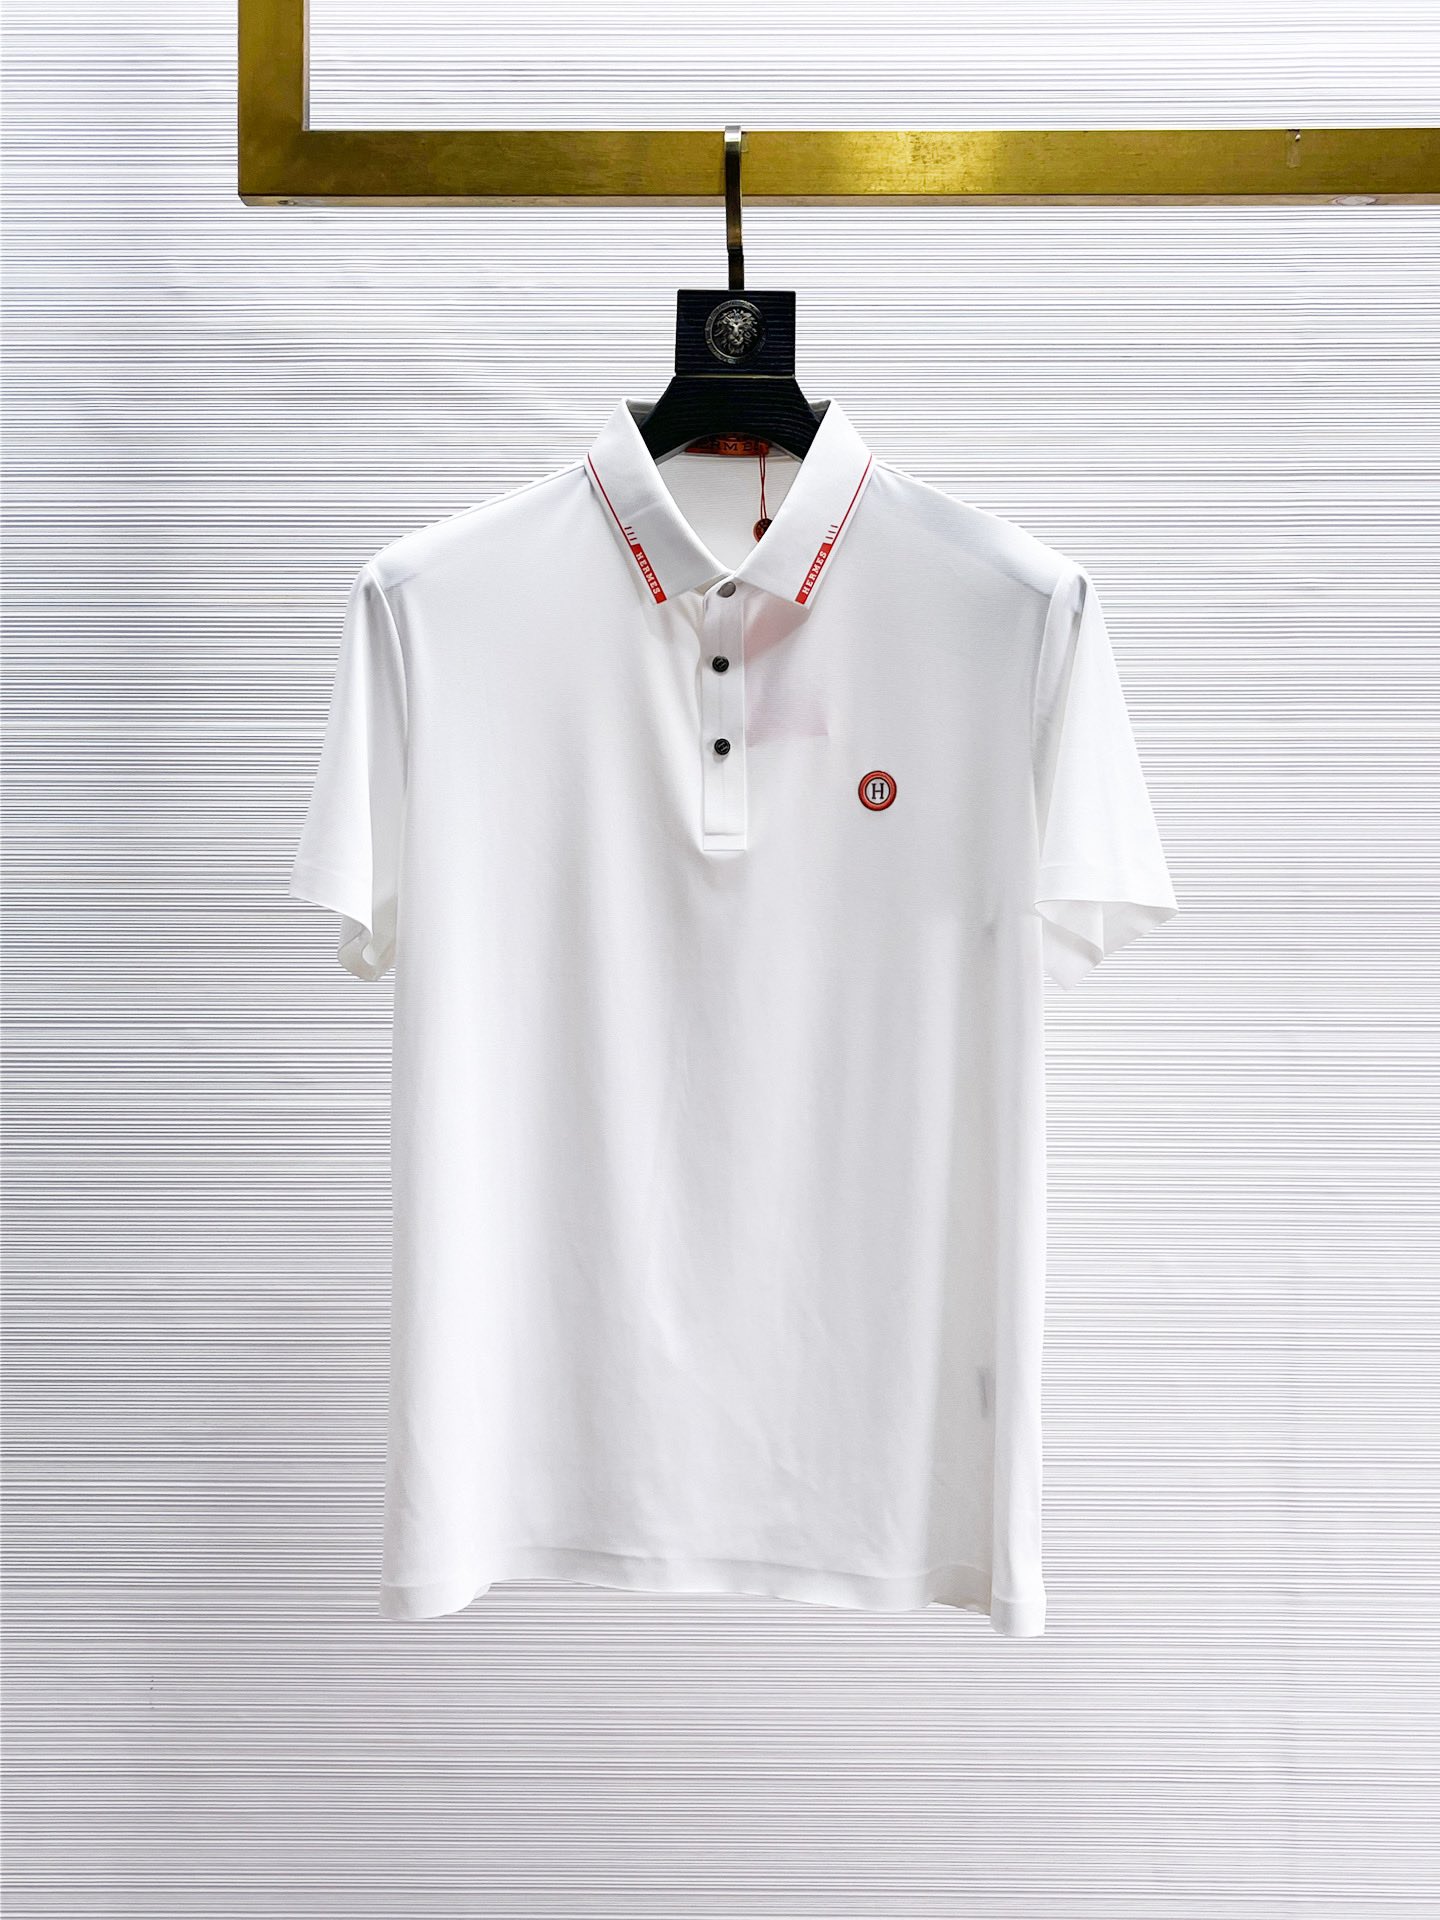 Hermes Vêtements Polo T-Shirt Réplique de concepteur haute qualité
 Blanc Série d’été Manches courtes